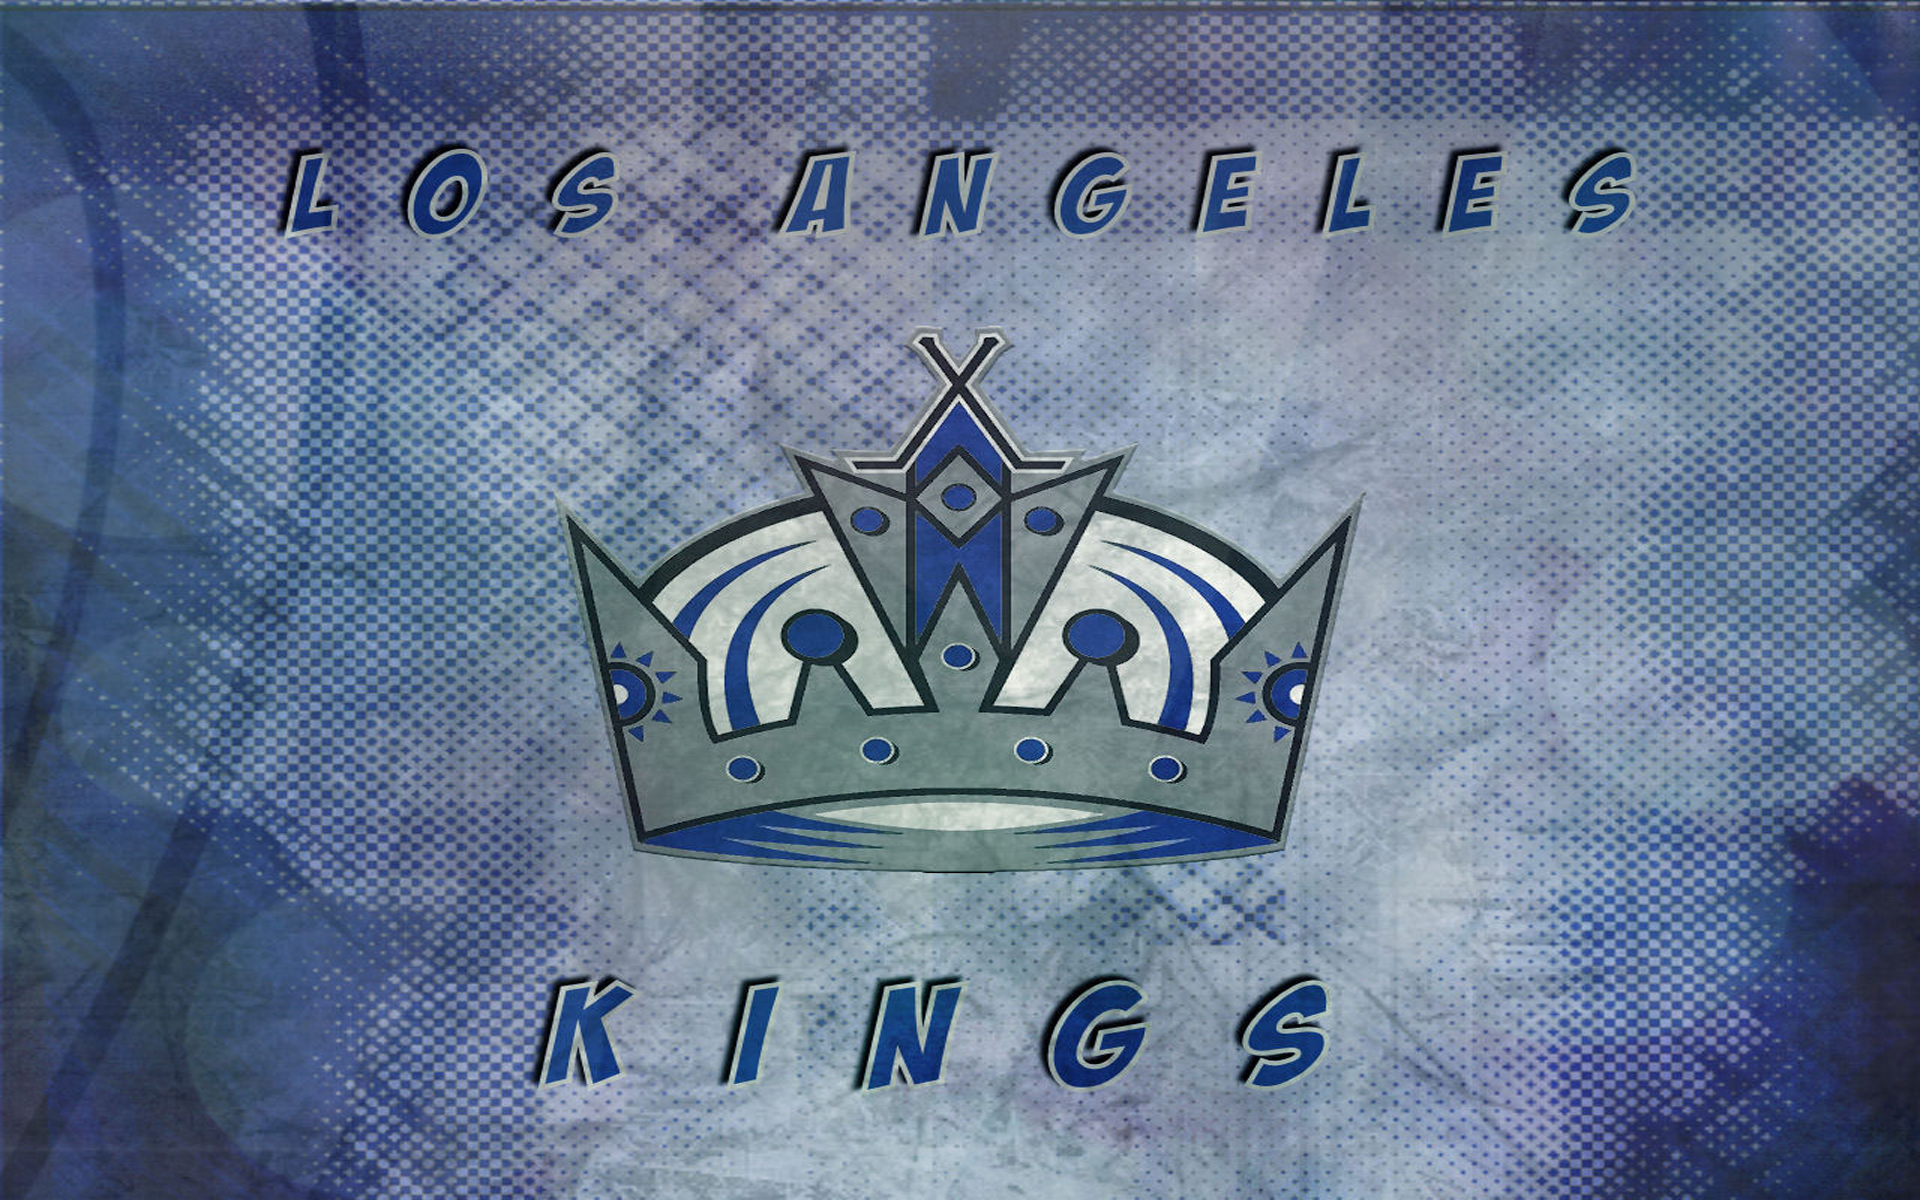 Los Angeles Kings Nhl Cool Wallpapers 1920 - Los Angeles Kings History Png - HD Wallpaper 